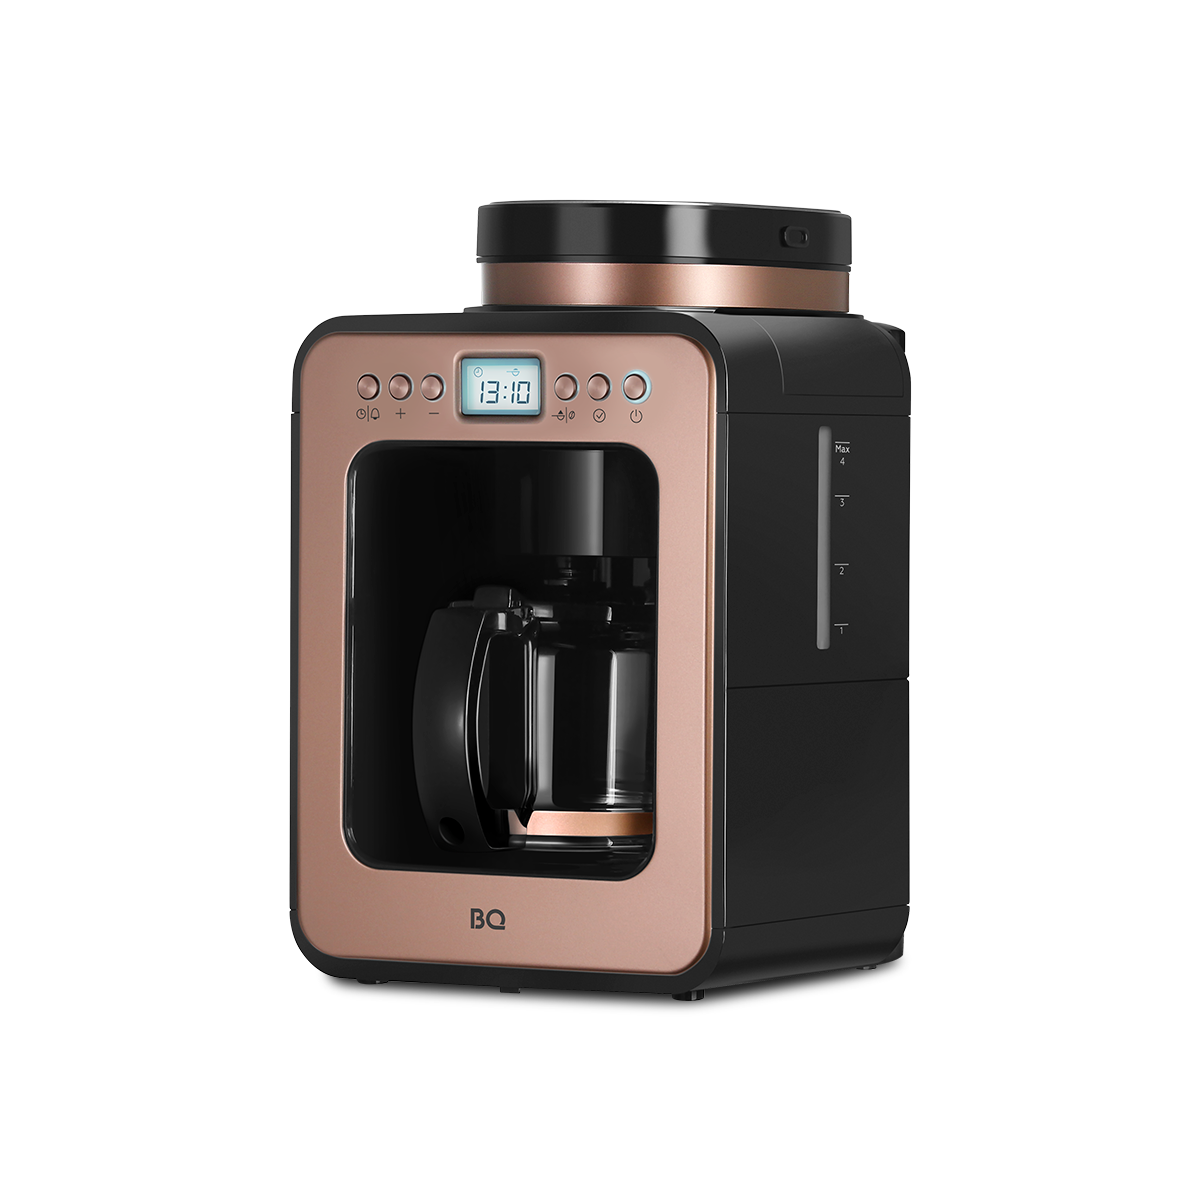 Кофеварка капельного типа BQ CM7001 золотистый, розовый, черный капельная кофеварка со встроенной кофемолкой bq cm7001 стальной